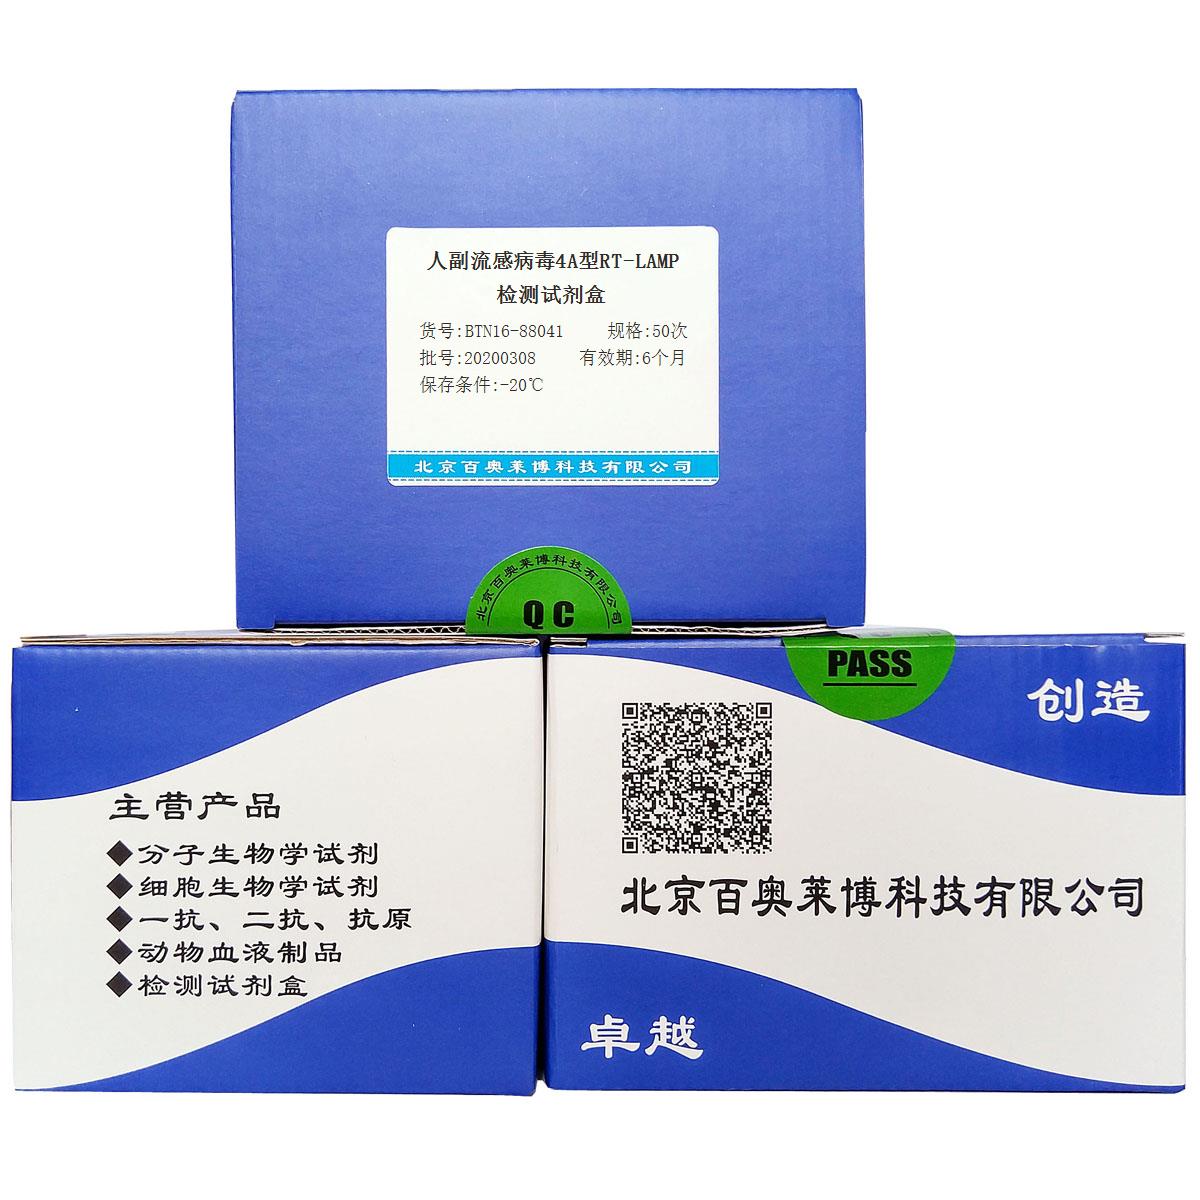 人副流感病毒4A型RT-LAMP检测试剂盒